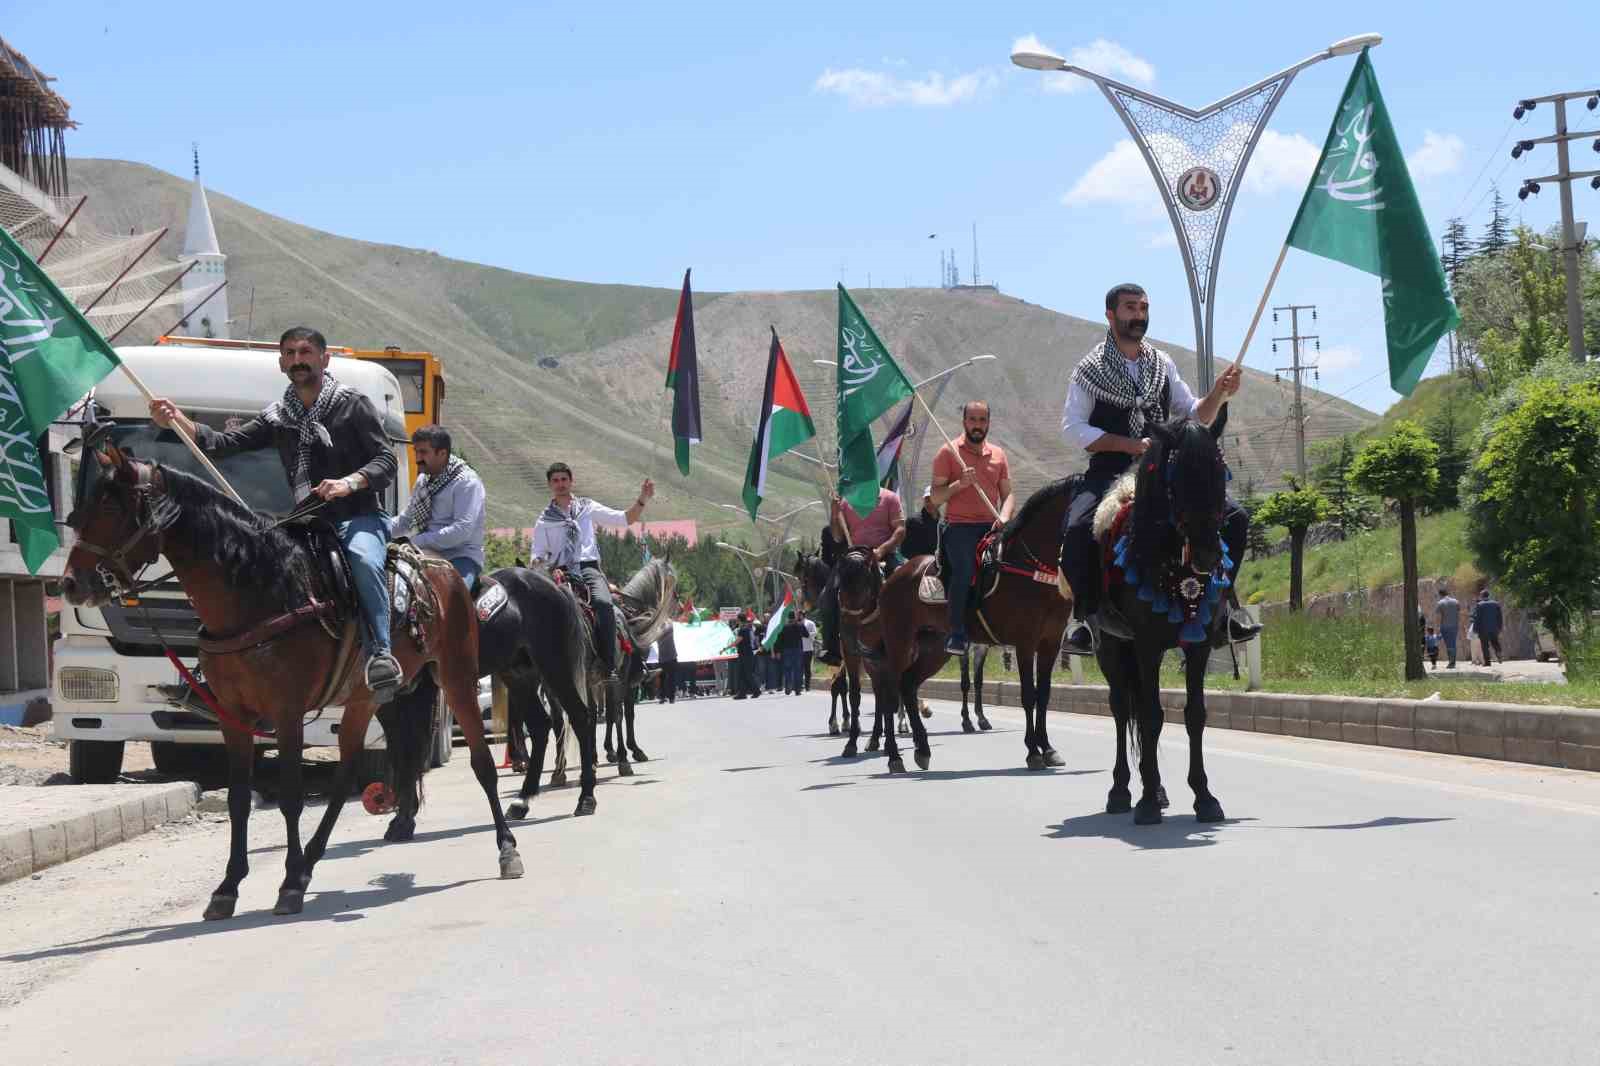 Bitlis’te vatandaşlar Filistin için yürüdü